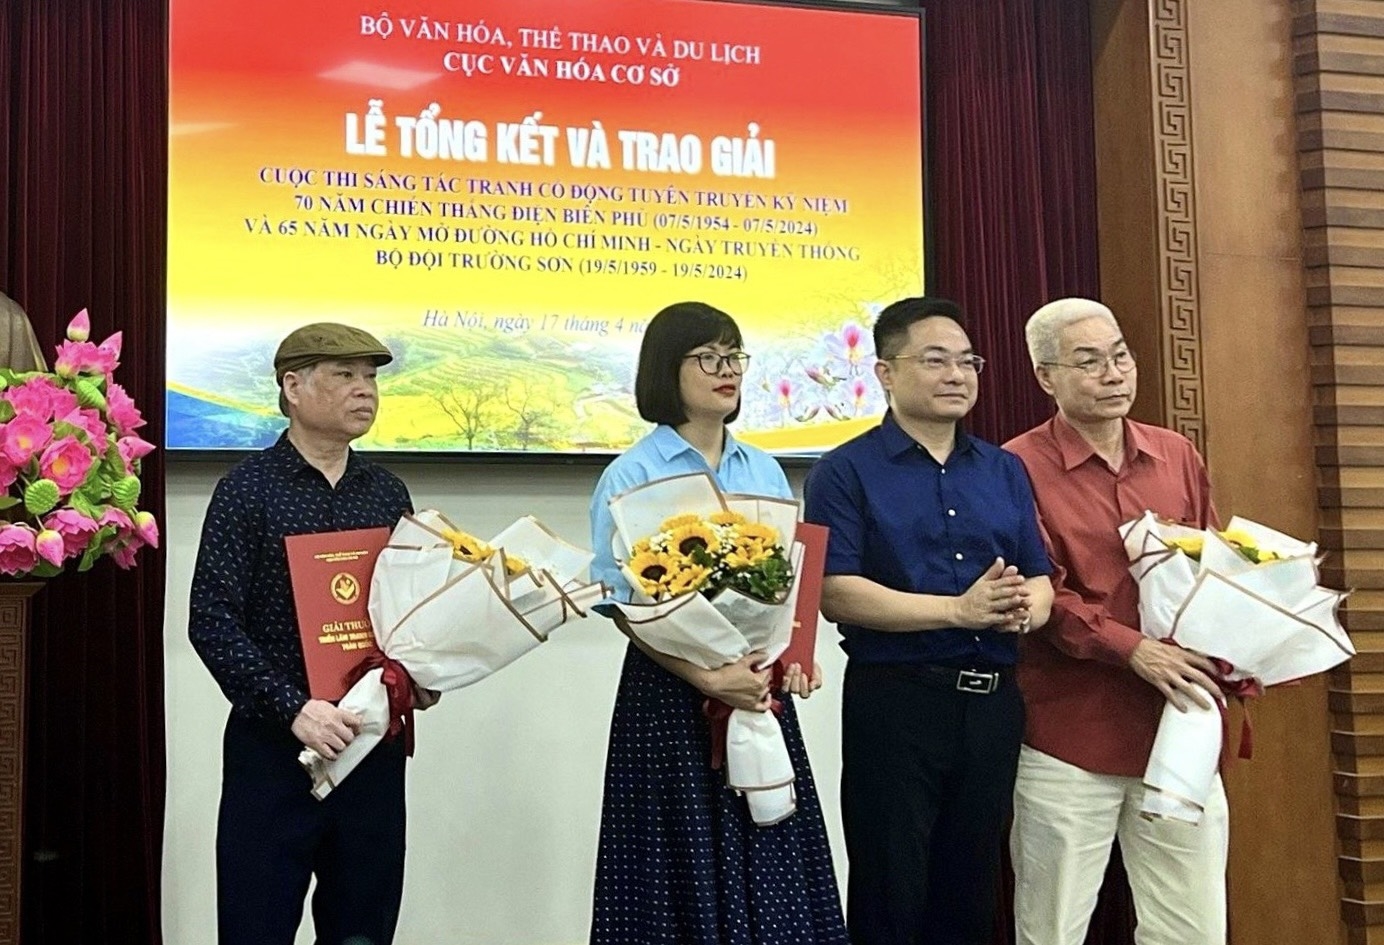 Phó Cục trưởng Cục Văn hóa cơ sở Nguyễn Quốc Huy trao giải Nhì cho các tác giả.